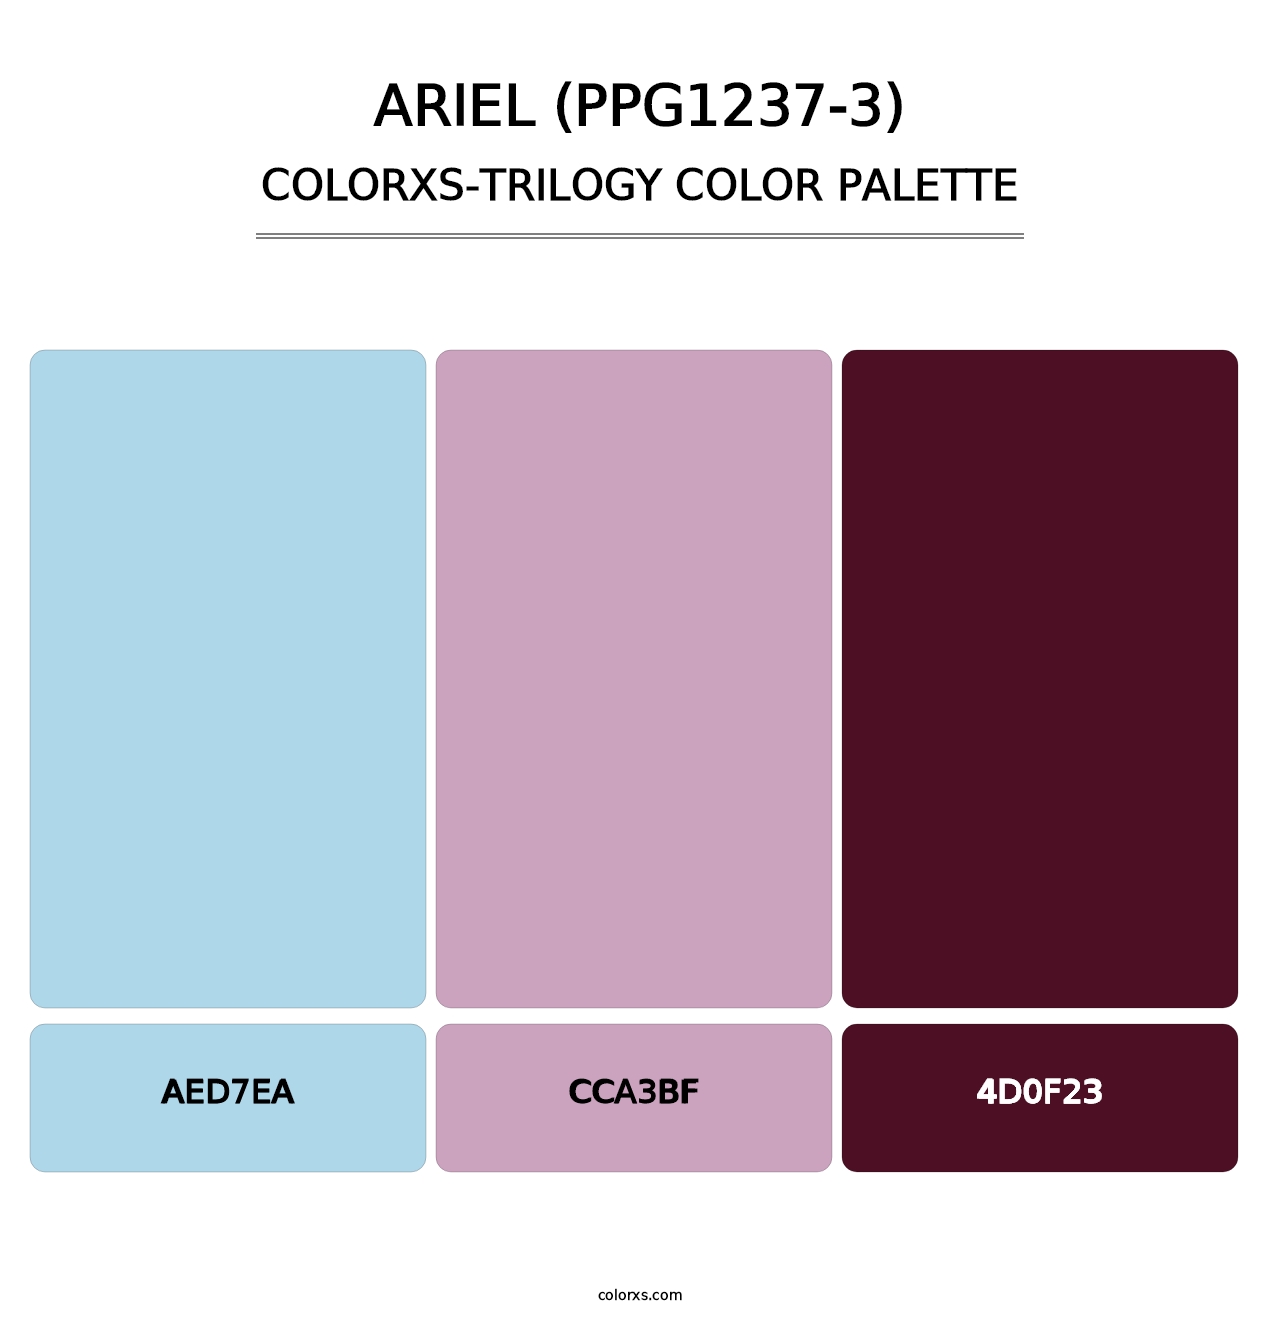 Ariel (PPG1237-3) - Colorxs Trilogy Palette